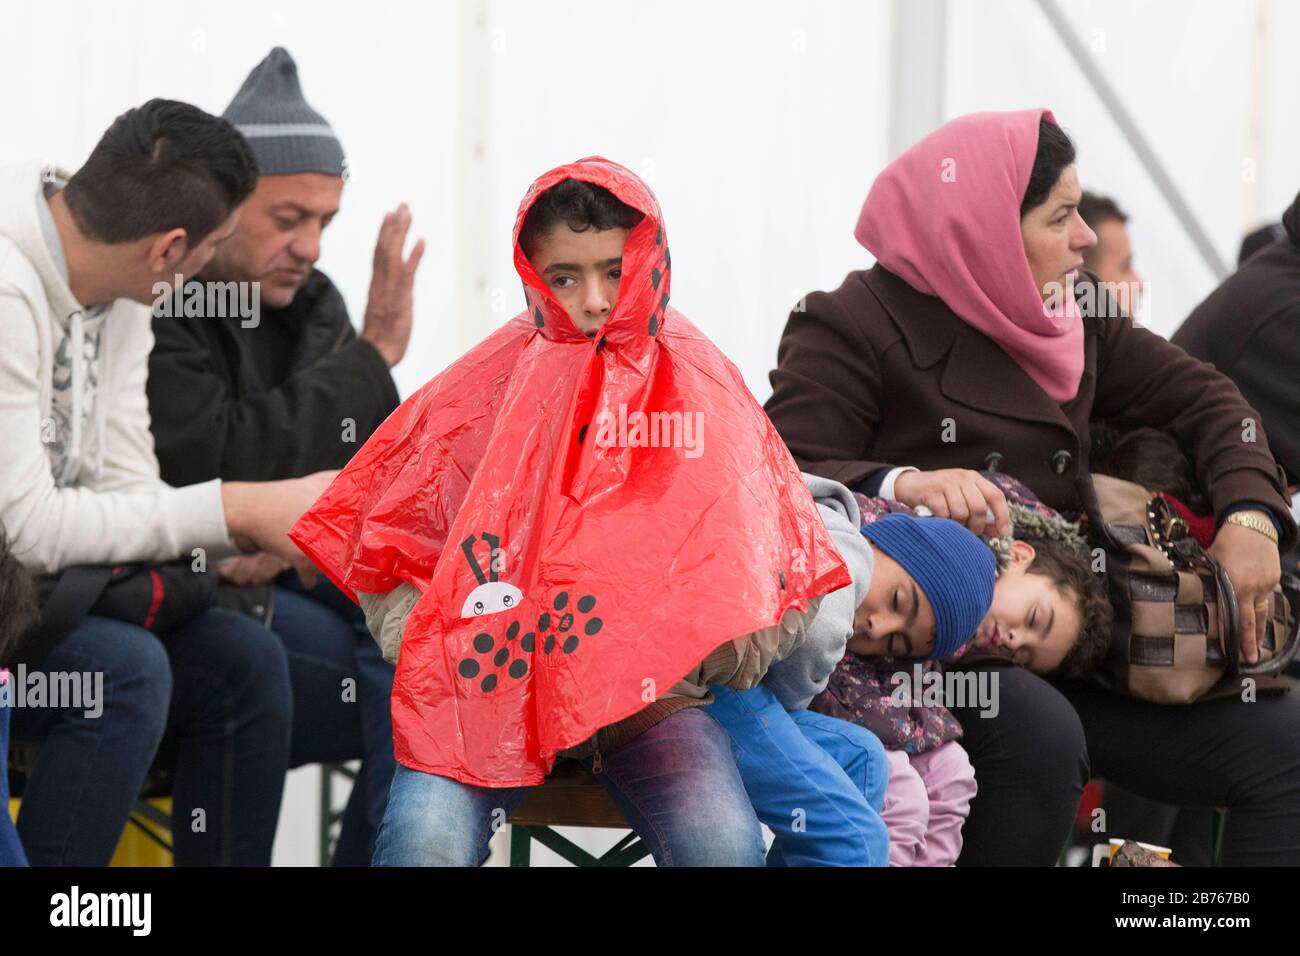 Une famille de réfugiés avec enfants attend dans une tente le 15.10.2015 au Bureau d'État de la santé et des affaires sociales de Berlin, LaGeSo, pour son inscription. [traduction automatique] Banque D'Images